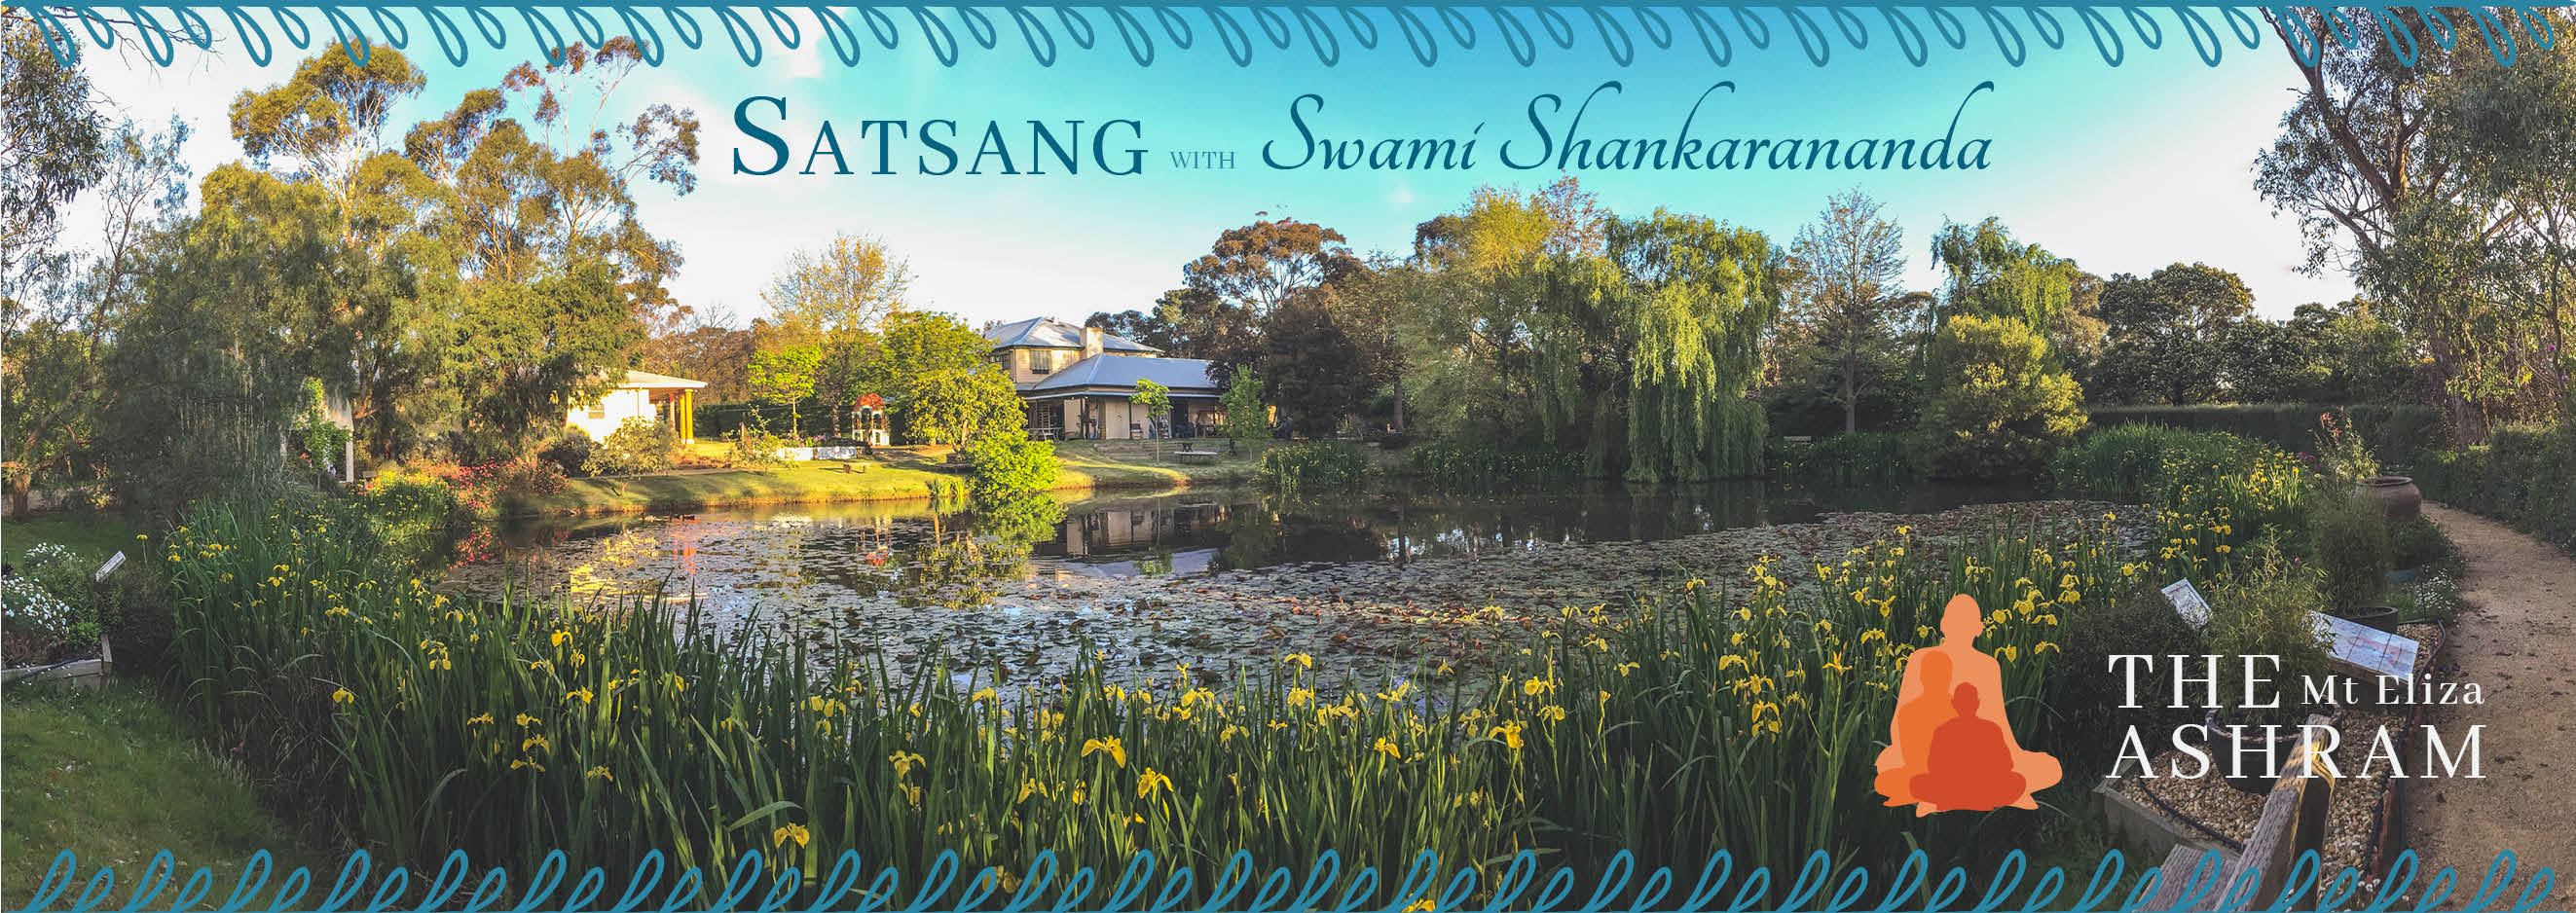 Satsang with Swami Shankarananda header image 1